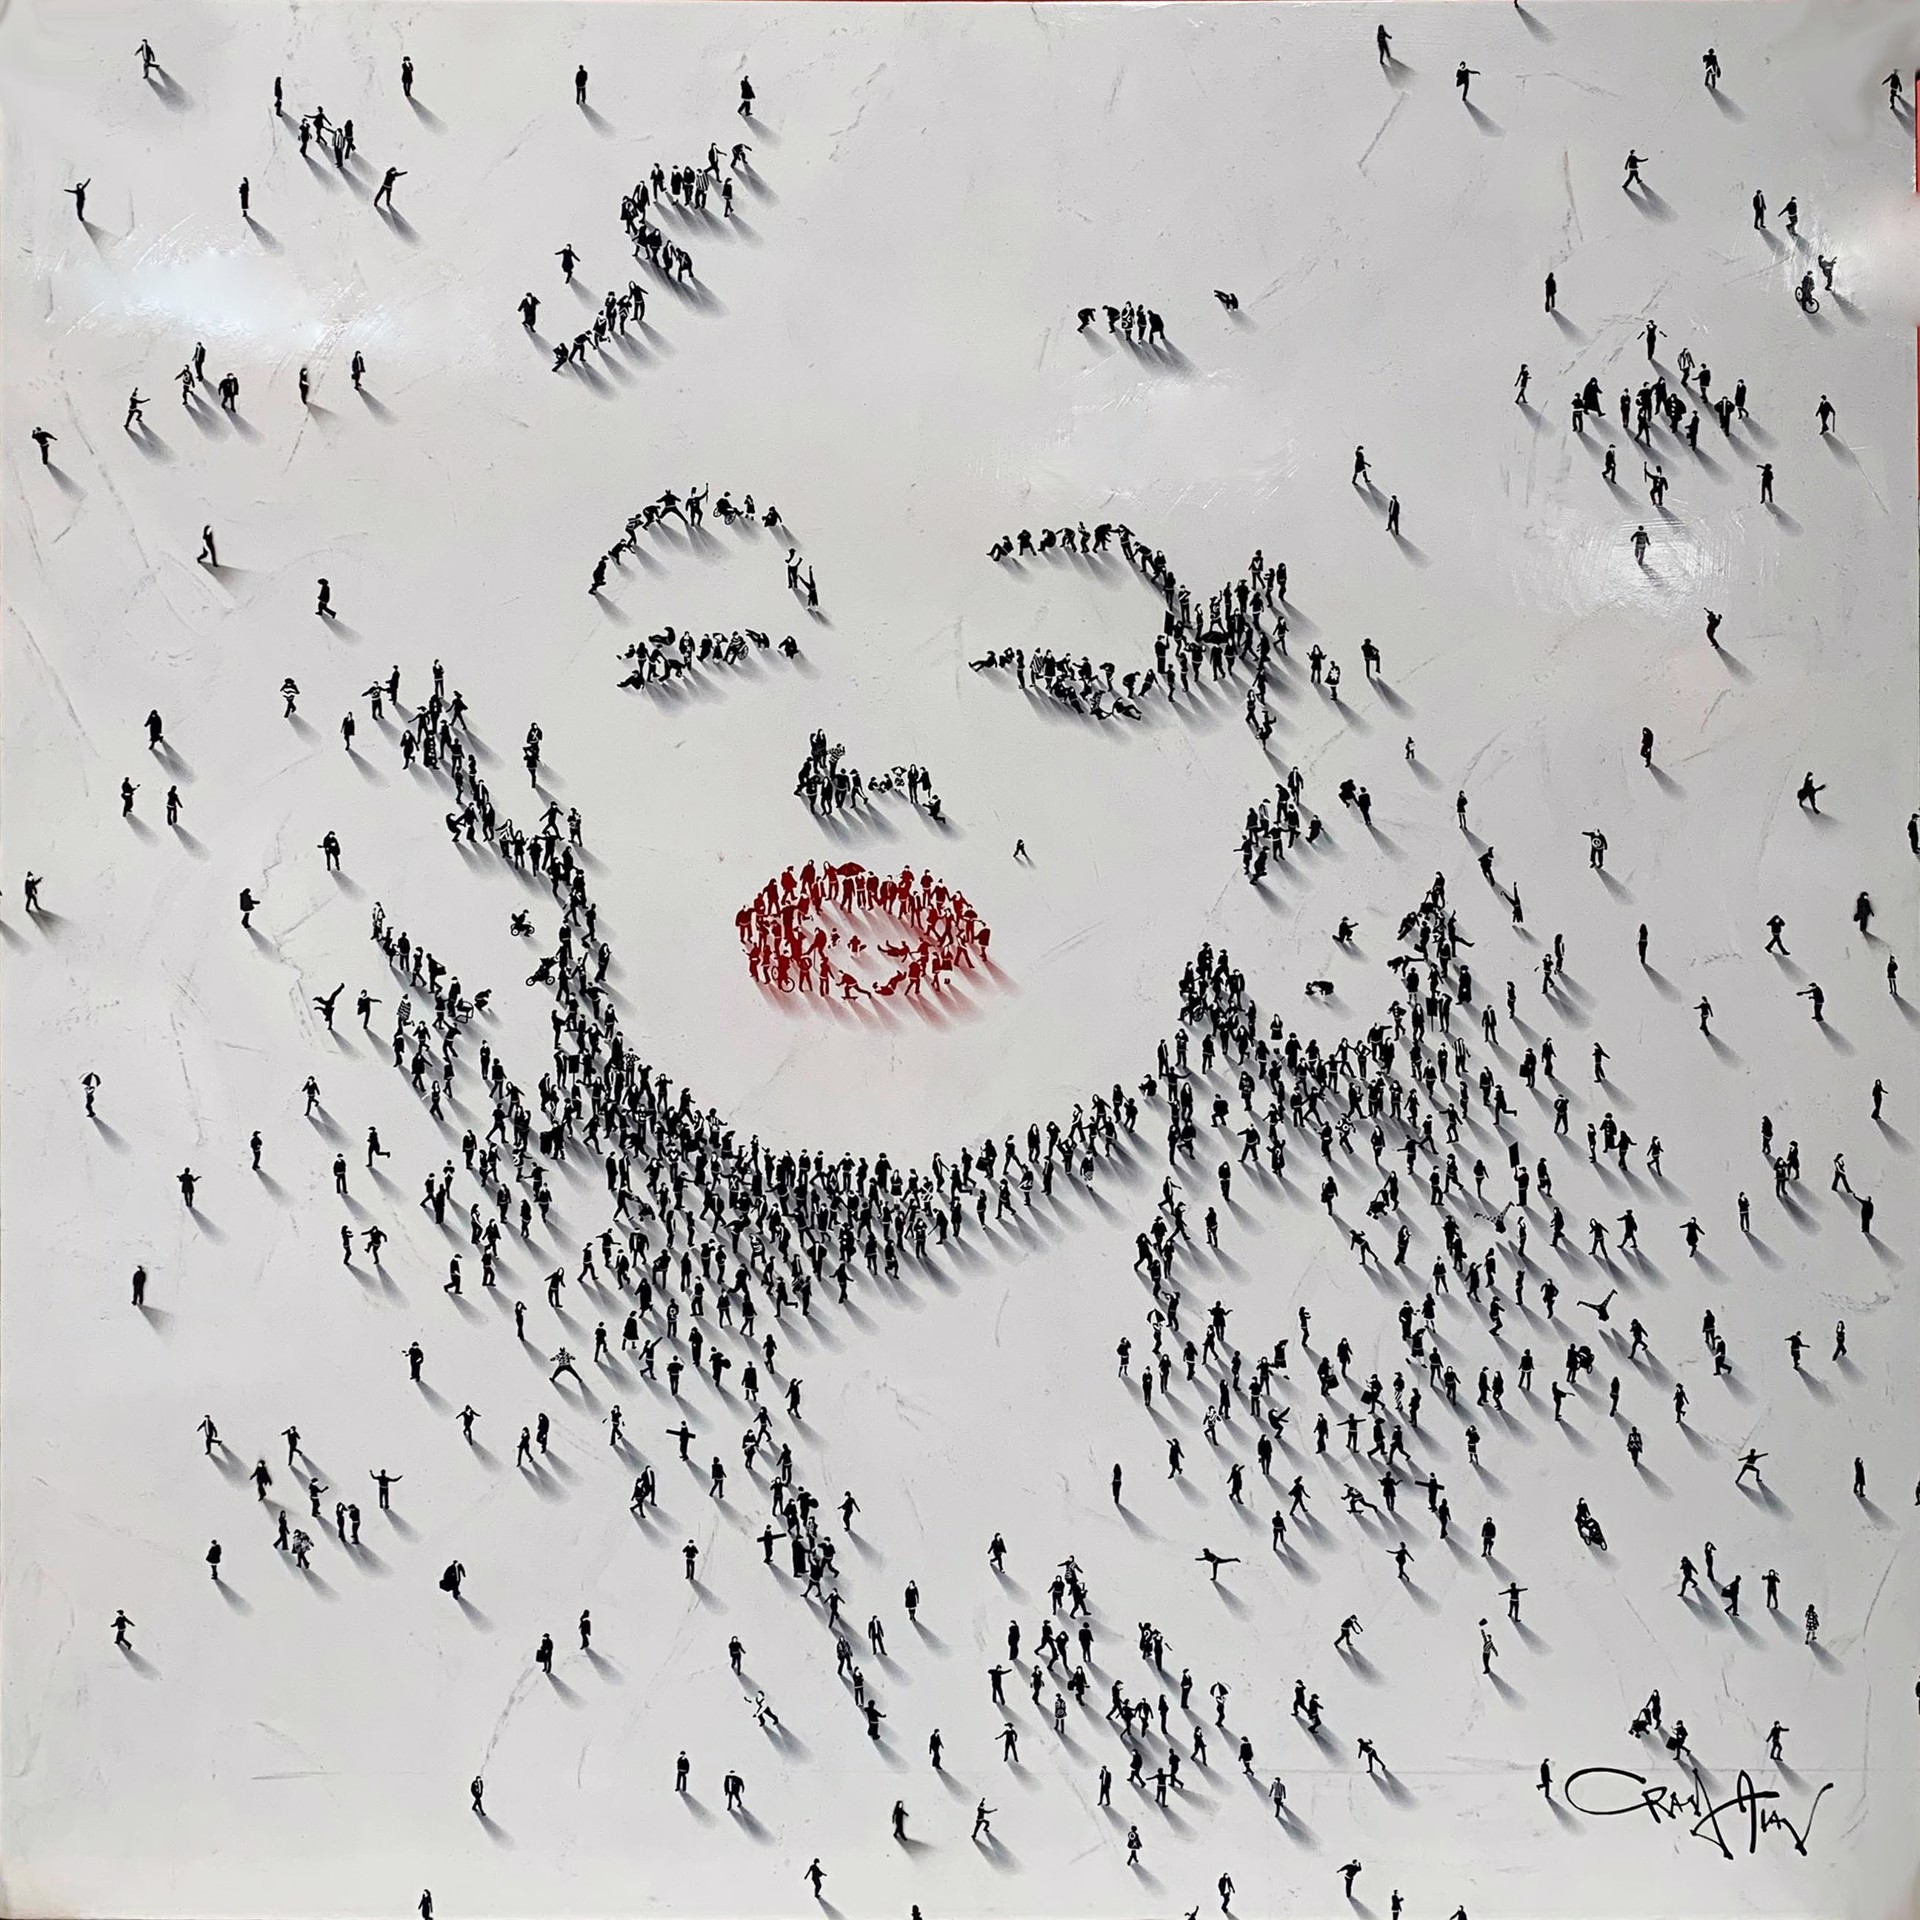 Coy (Marilyn Monroe) by Craig Alan